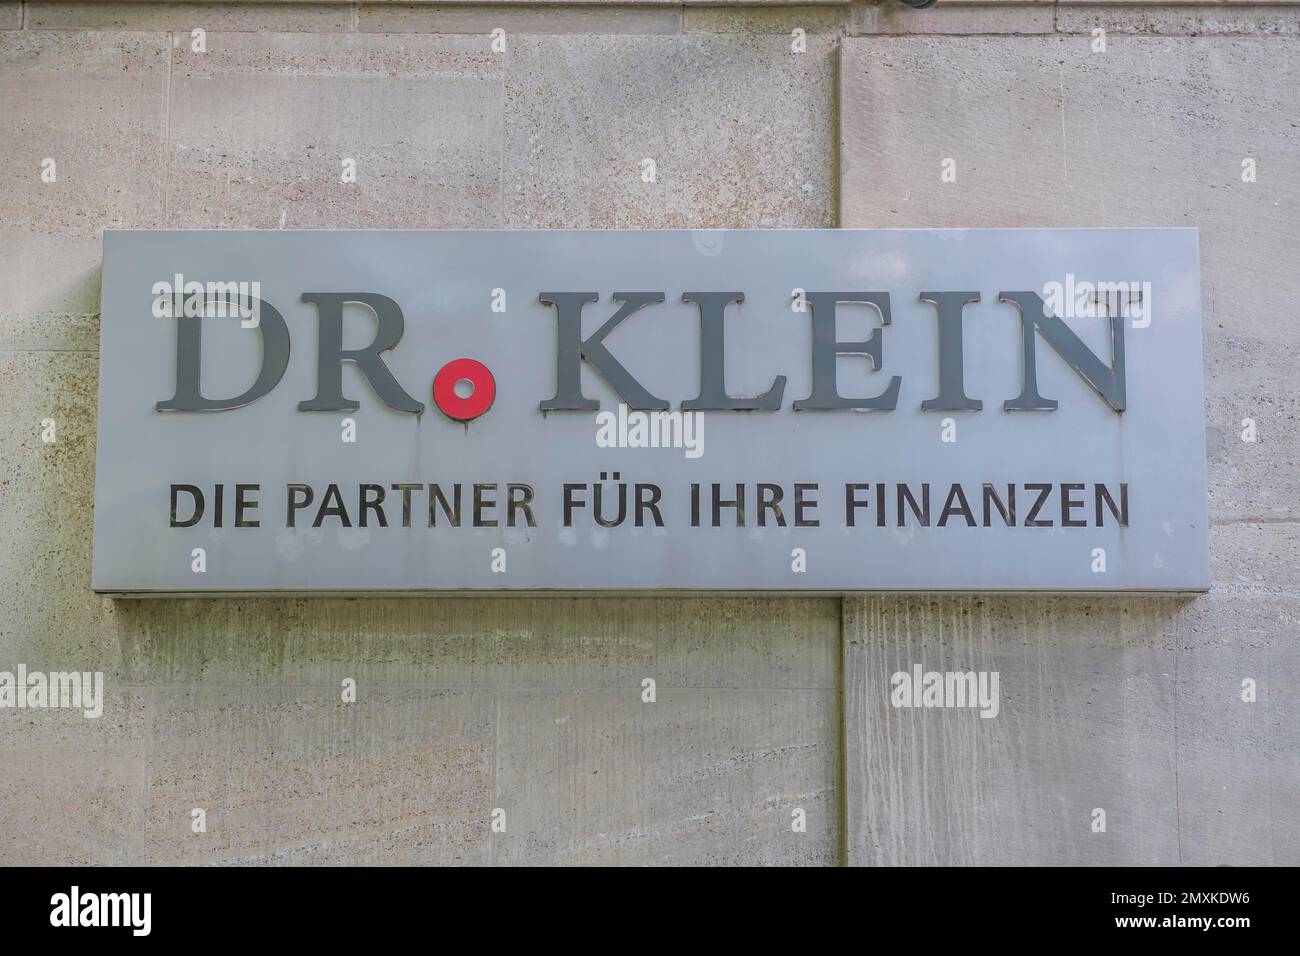 Dr. Klein Real Estate Finance, Klosterstraße, Mitte, Berlin, Deutschland, Europa Stockfoto